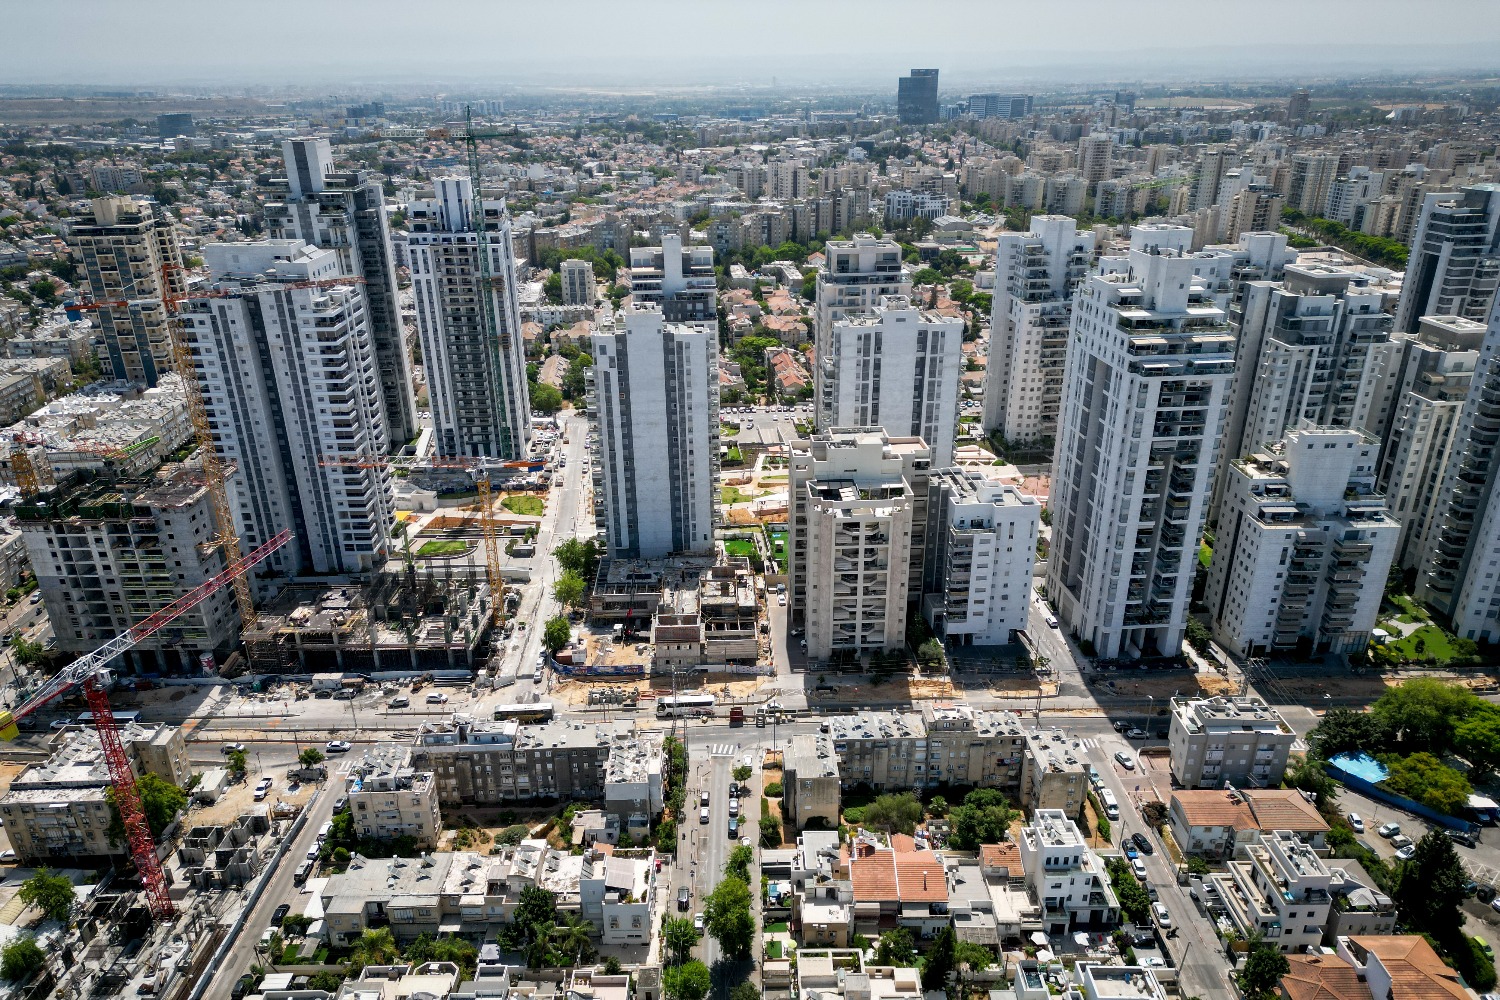 Les gratte-ciel de Holon : la vie urbaine au sud de Tel Aviv